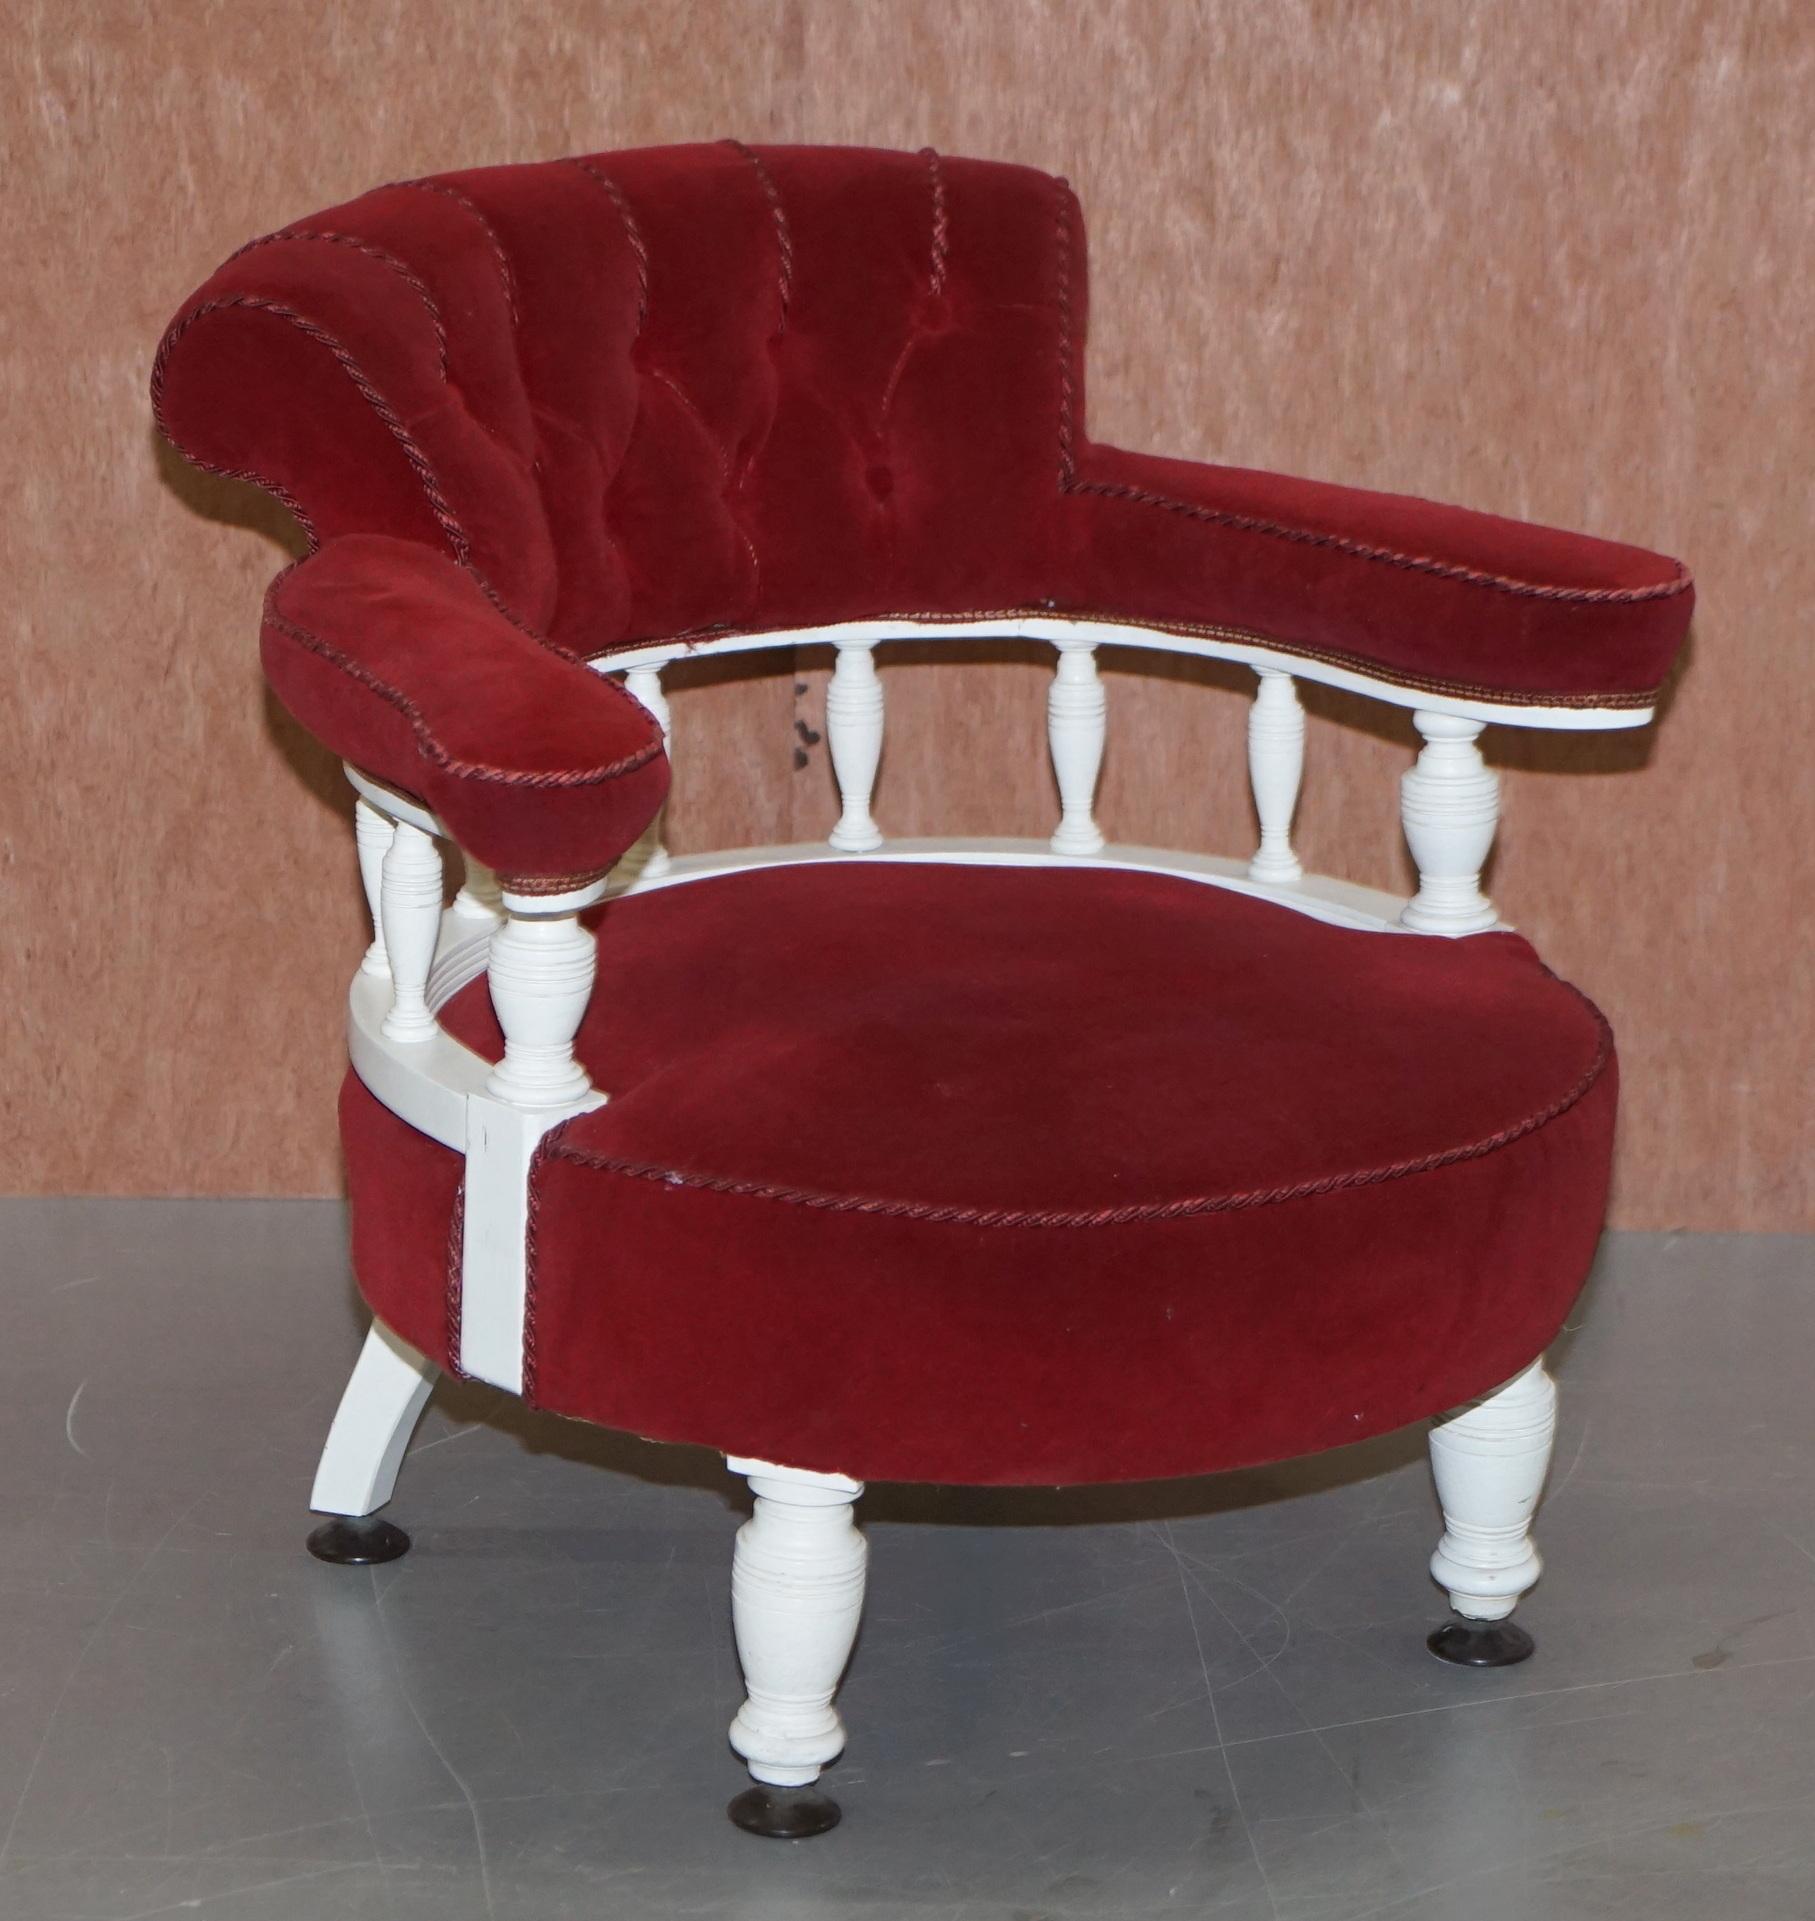 Nous avons le plaisir de proposer à la vente ce fauteuil d'appoint de capitaine d'époque victorienne, fabriqué à la main vers 1860

Pièce confortable et décorative, la chaise a un cadre blanc peint à la main, un rembourrage en velours rouge et une